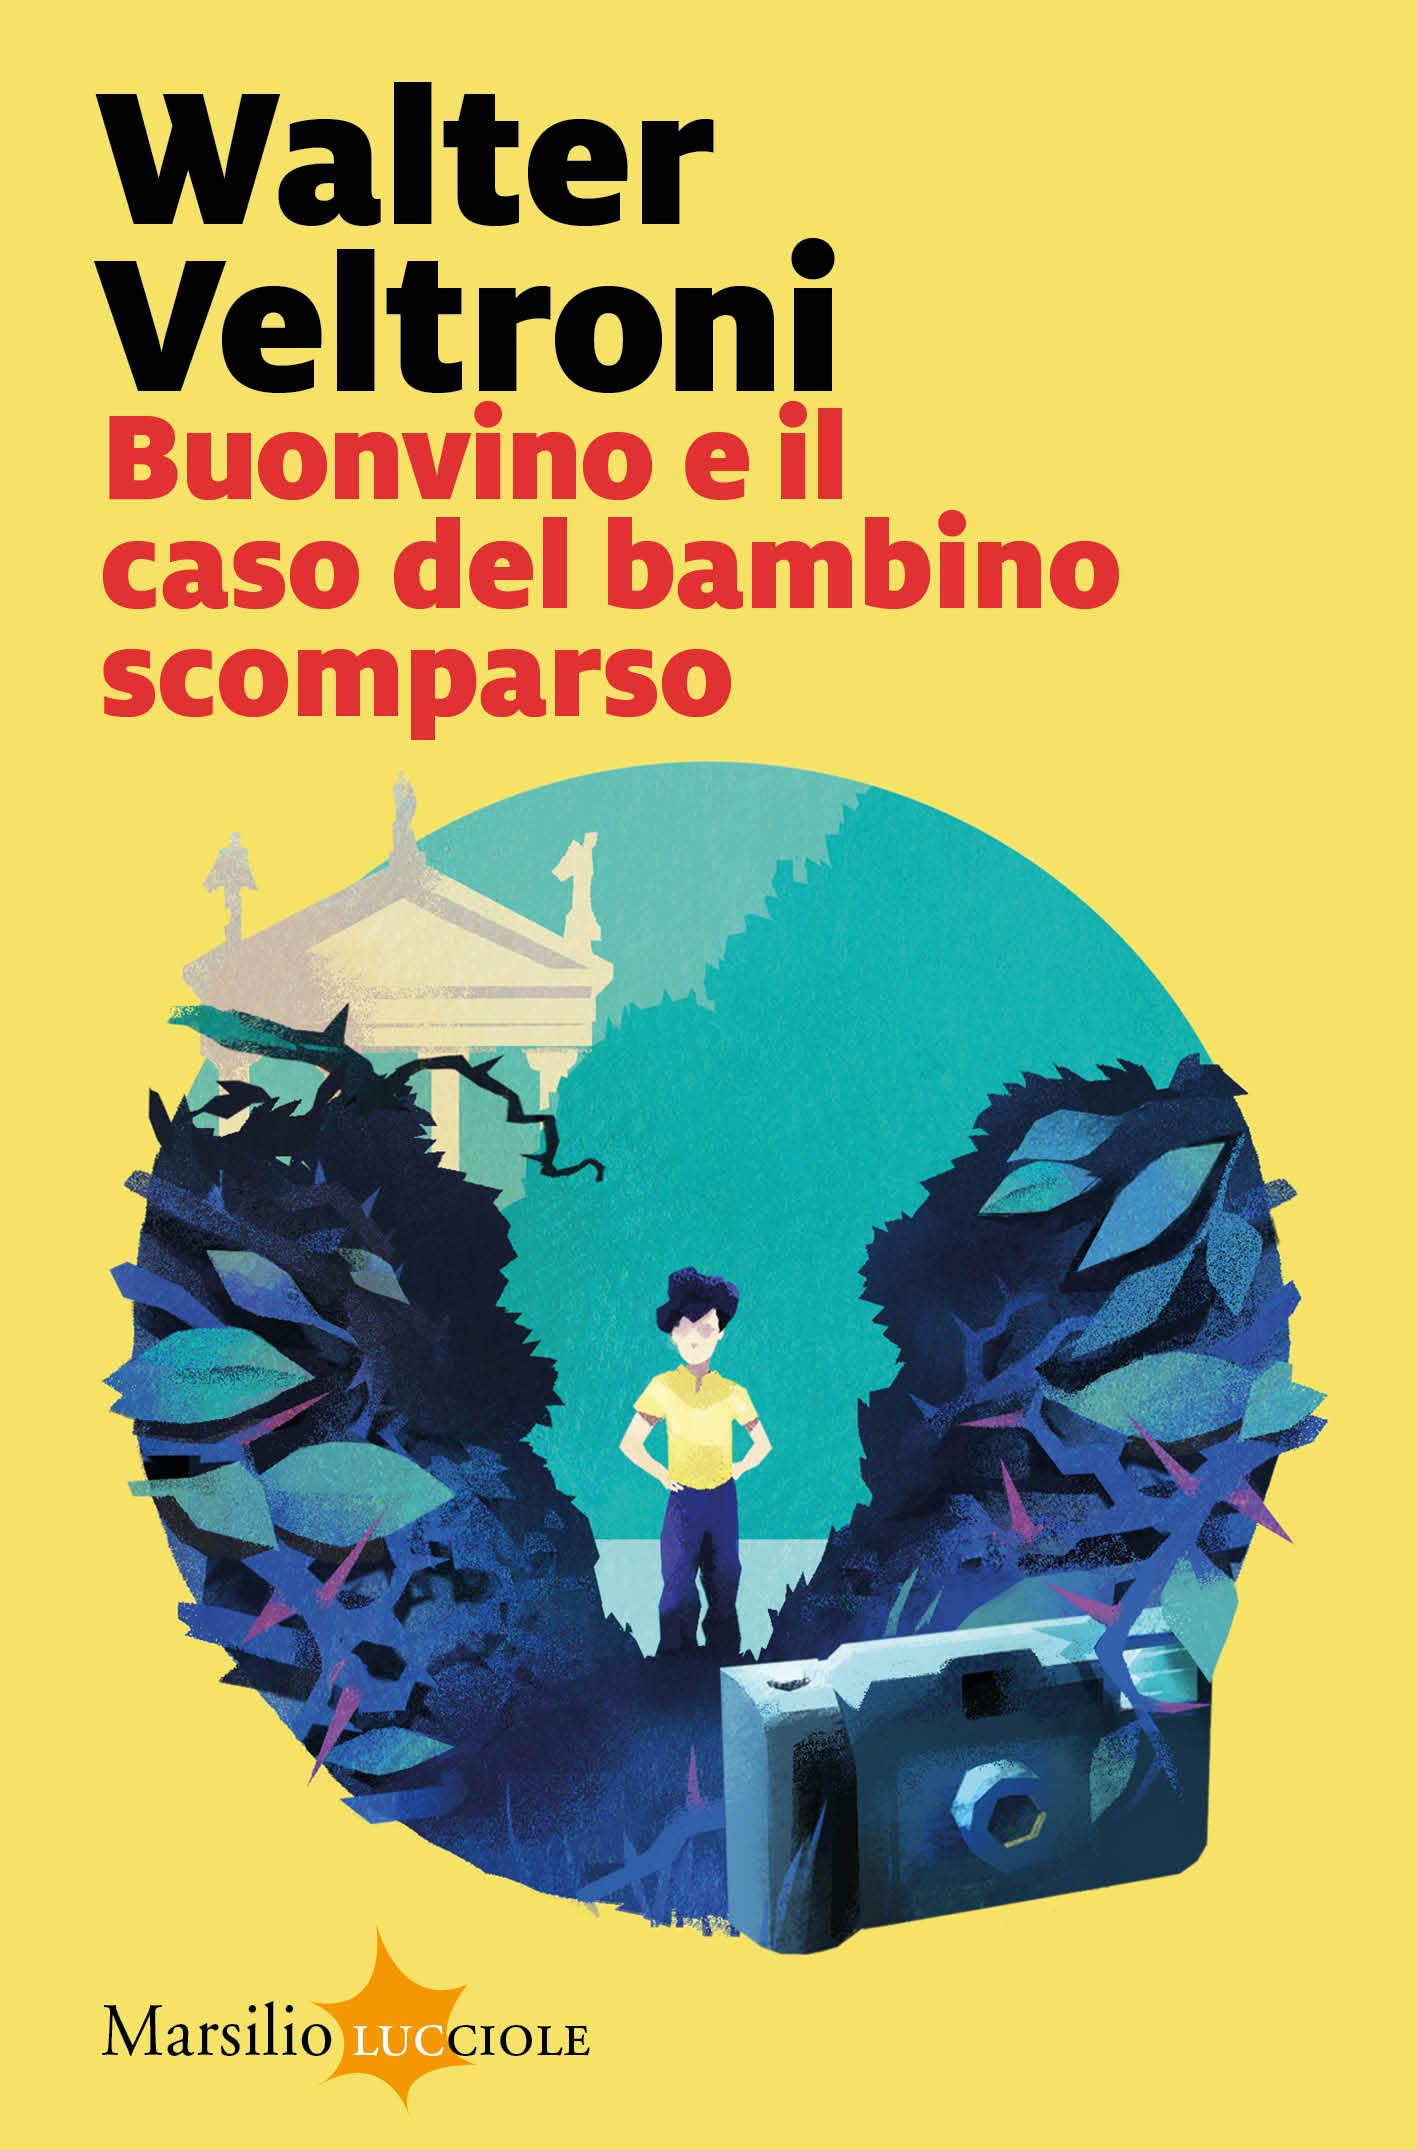 Buonvino e il caso del bambino scomparso in Kindle/PDF/EPUB